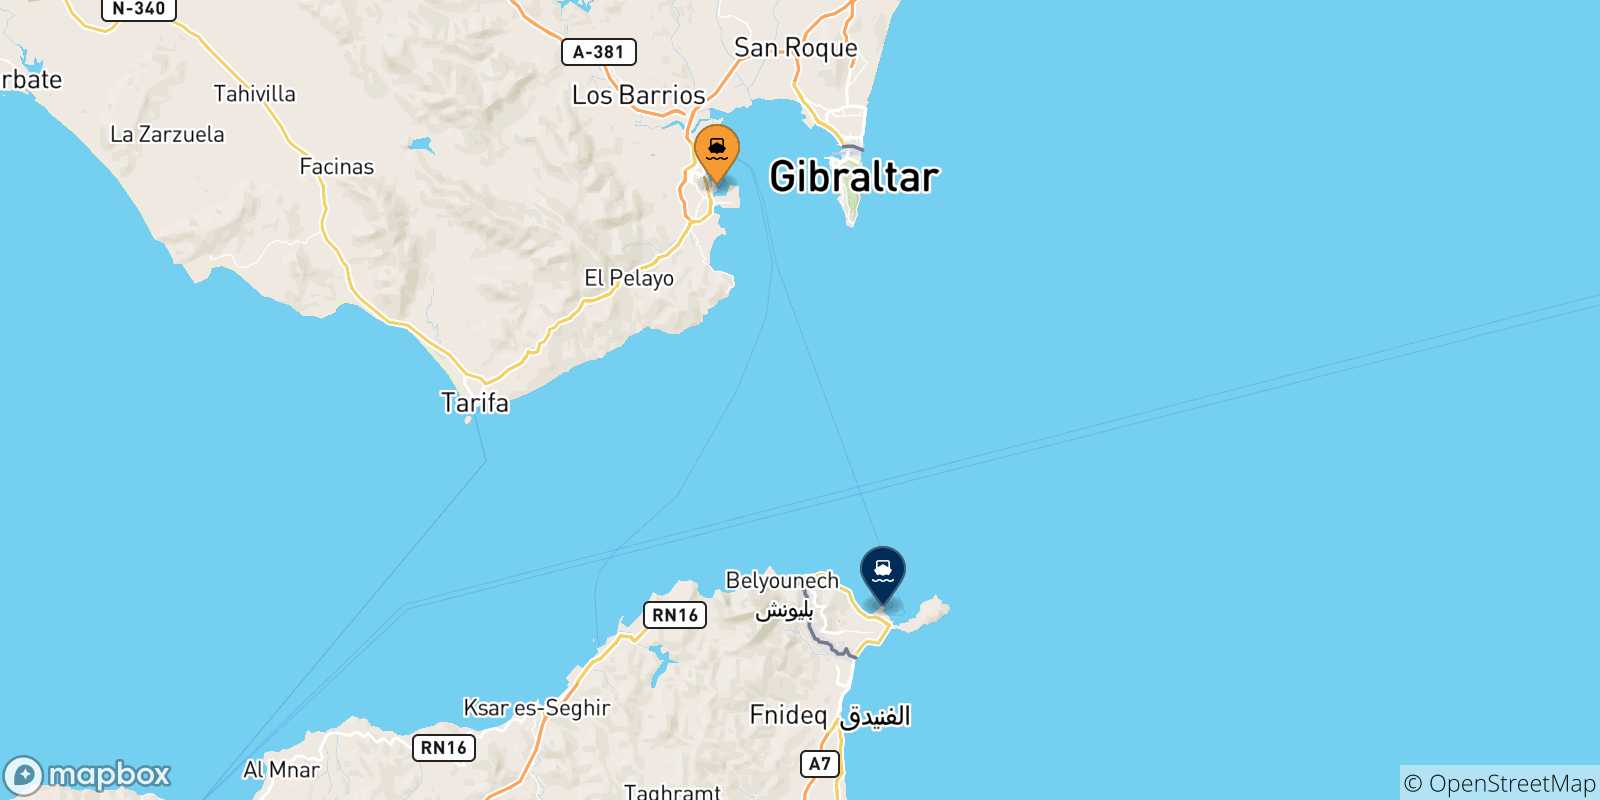 Mappa delle possibili rotte tra la Spagna e Ceuta